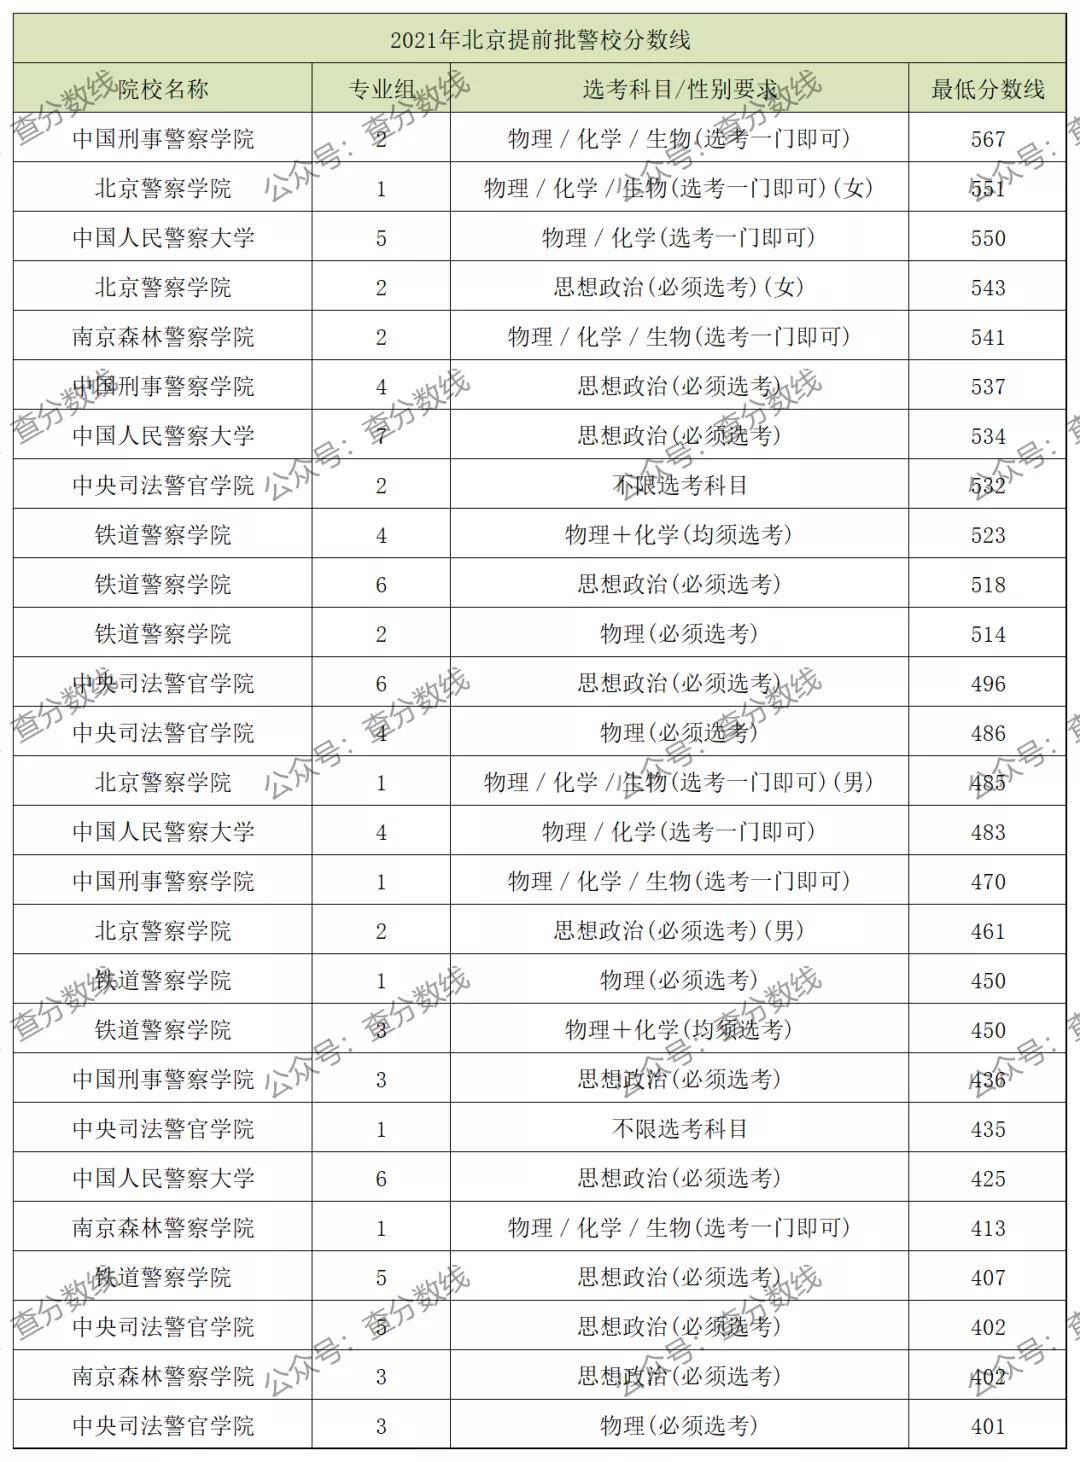 2021年在北京提前批收分最低的警校专业组是中央司法警官学院3专业组